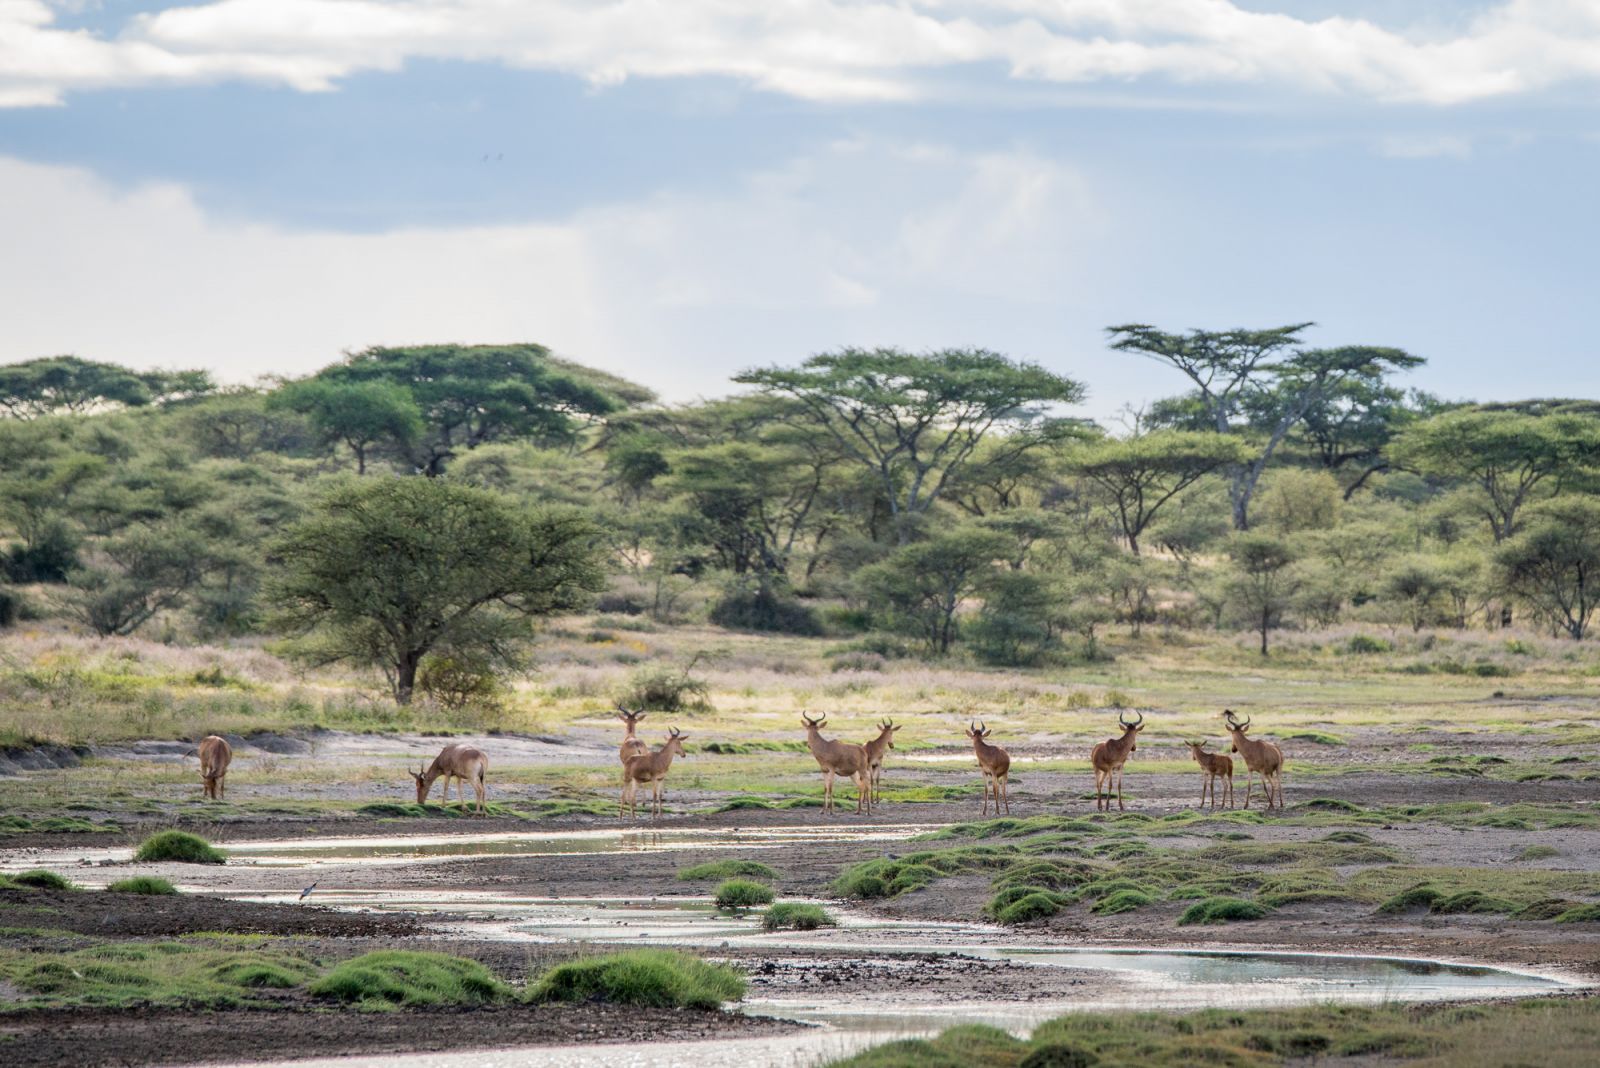 Kongoni antelopes at the river